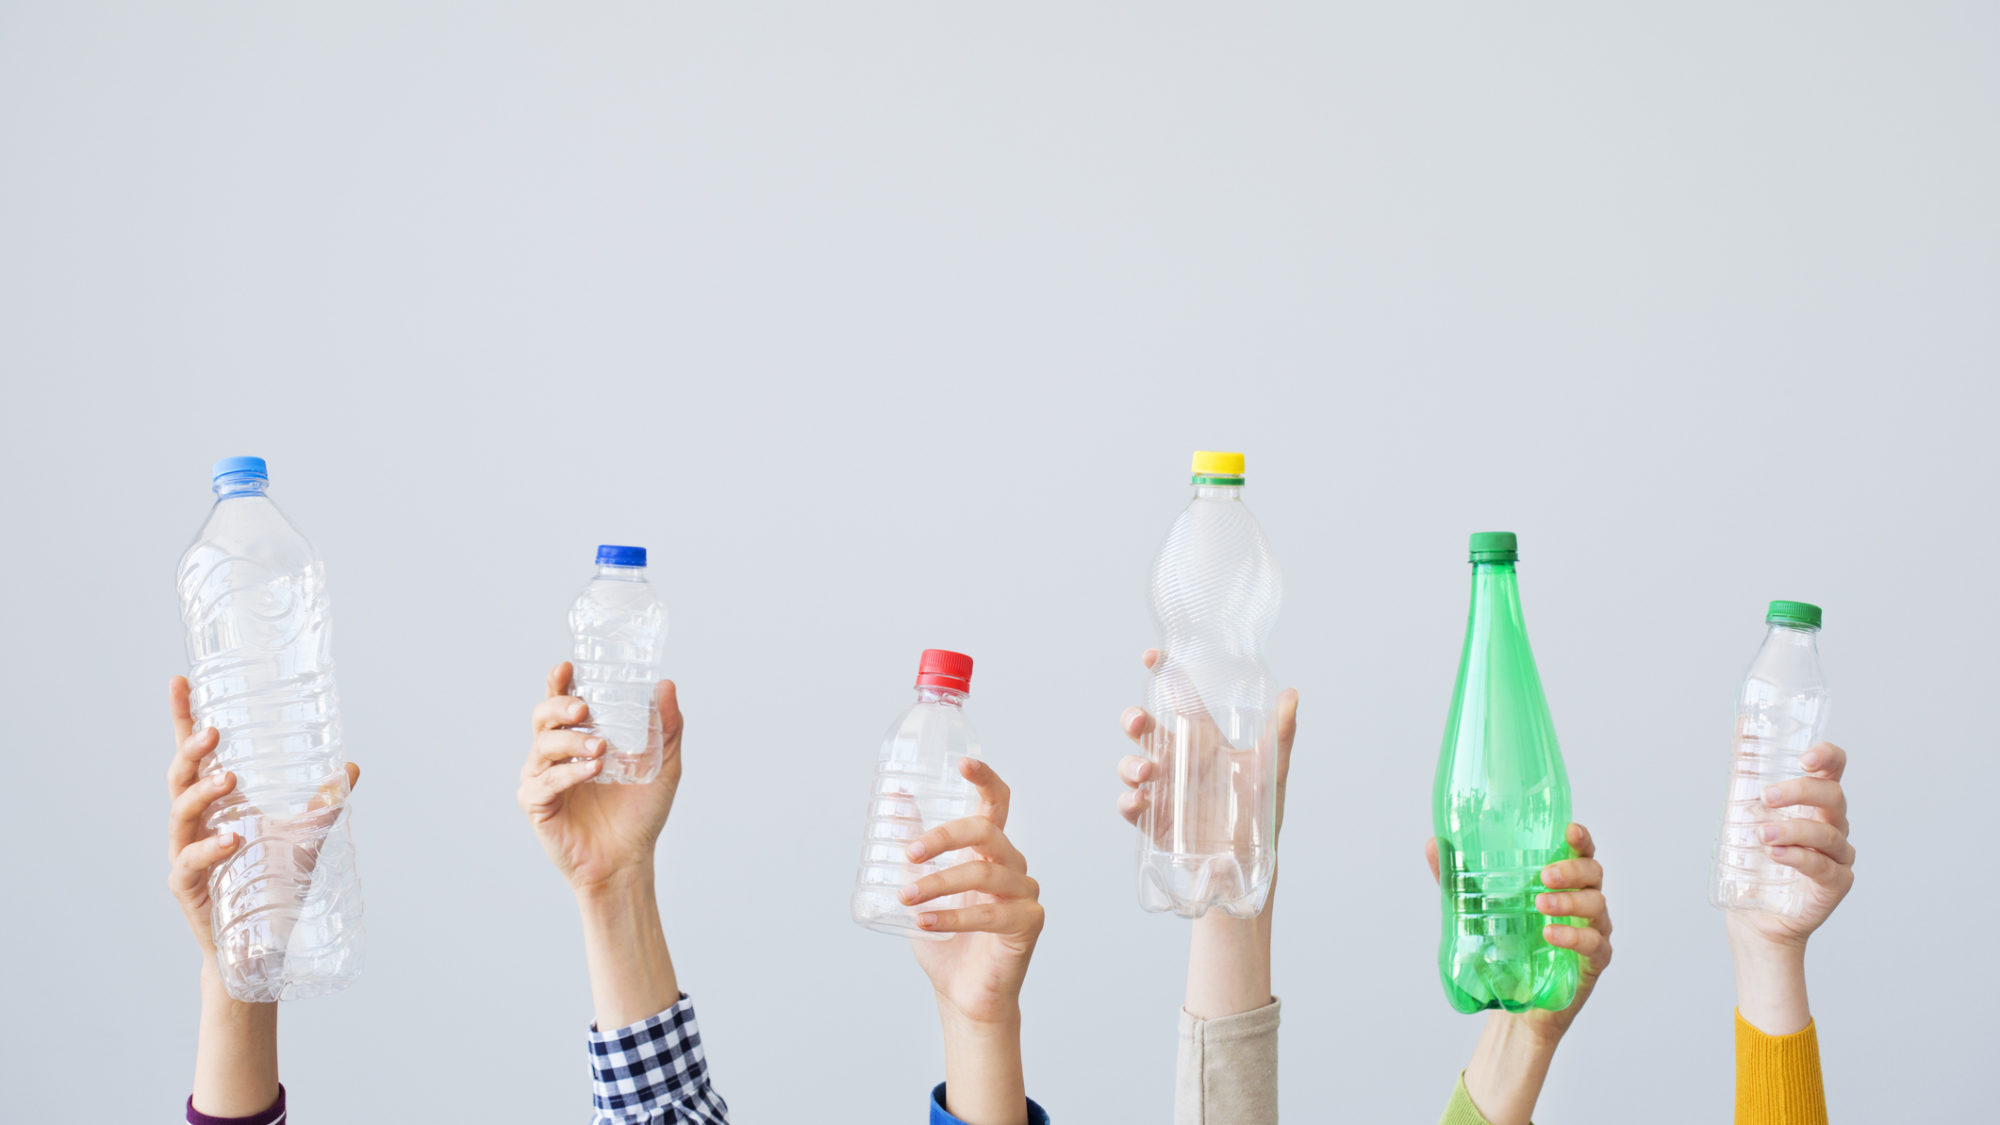 Quatro pequenos grandes passos para diminuir o uso de plástico